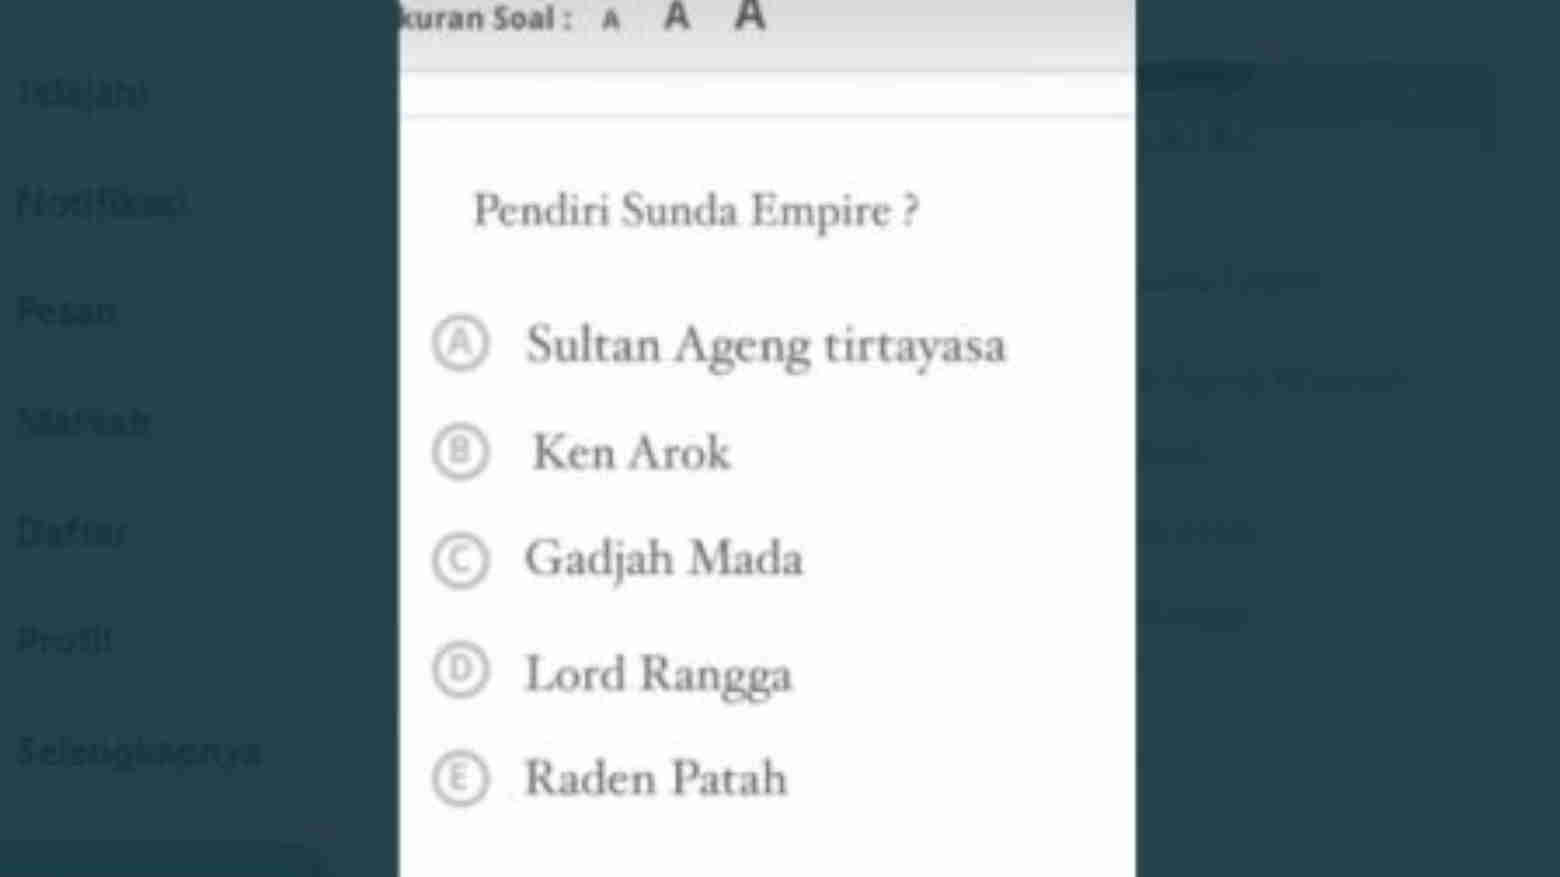 Pendiri Sunda Empire Masuk Dalam Soal Ujian Sekolah, Netizen: Kebenaran Sejarah Terungkap